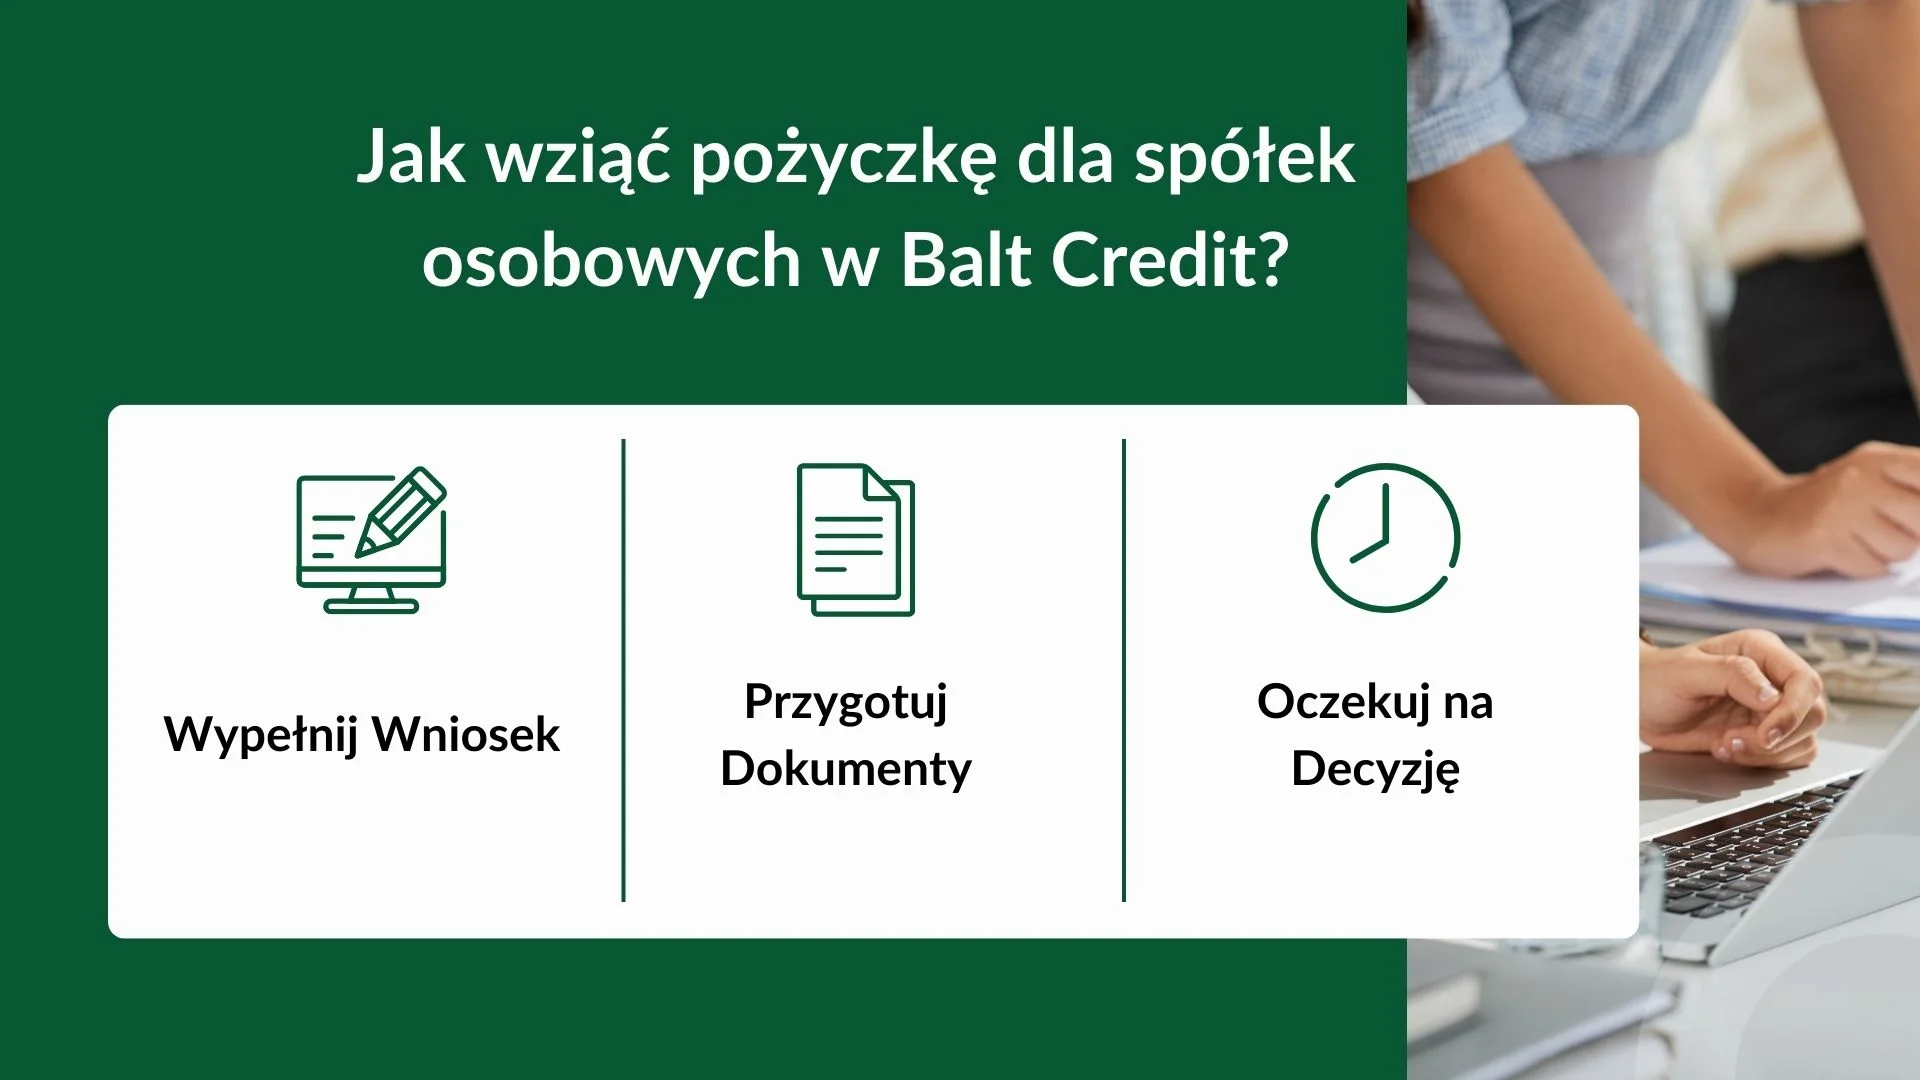 Jak wziąć pożyczkę dla spółek osobowych w Balt Credit?